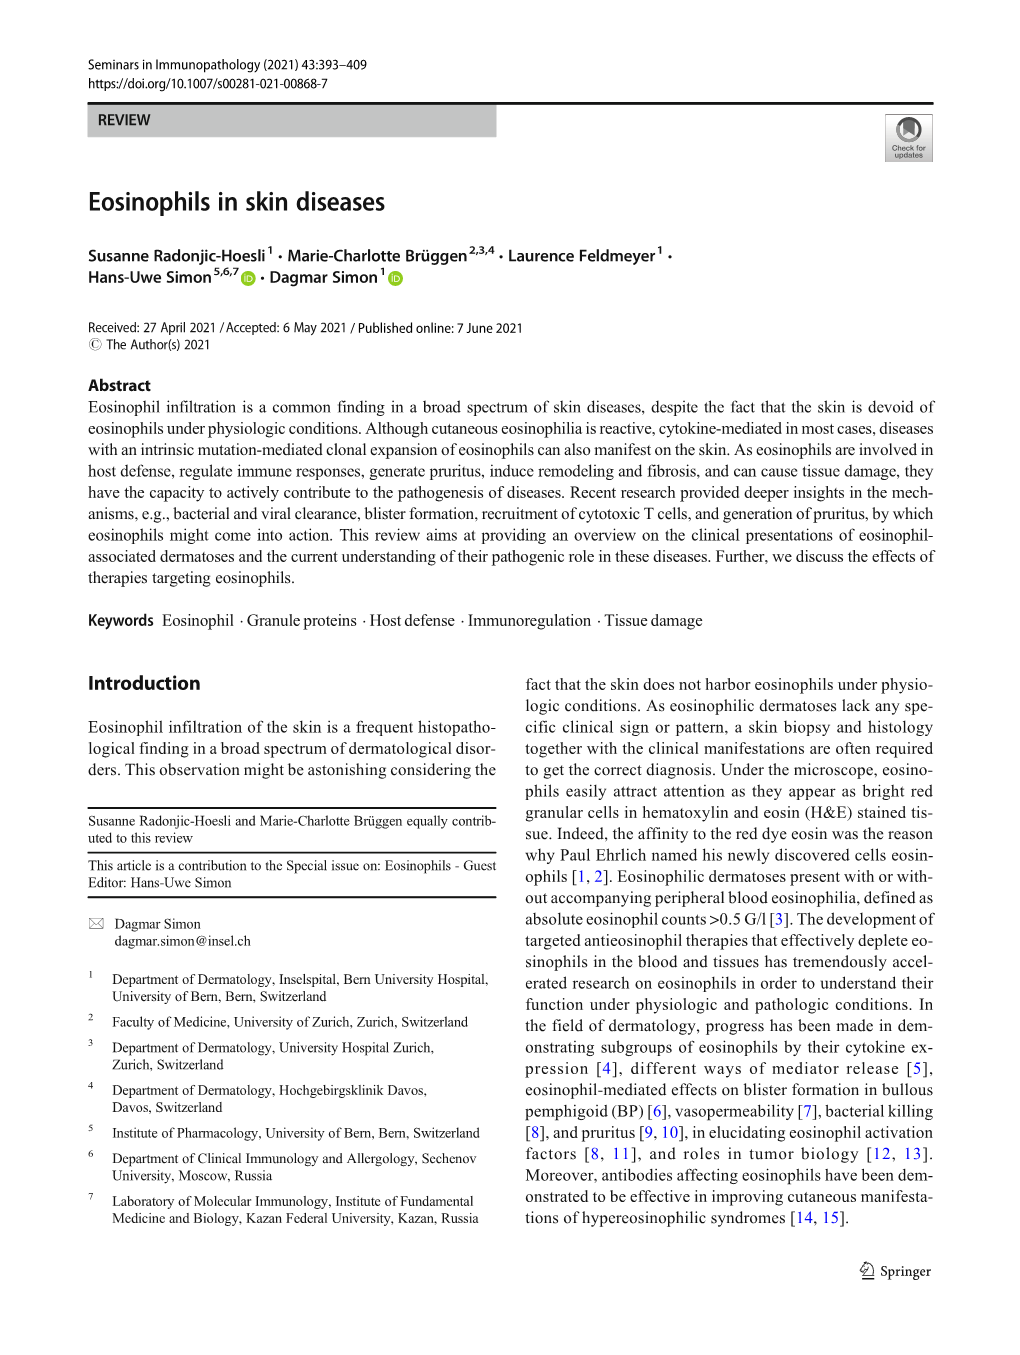 Eosinophils in Skin Diseases